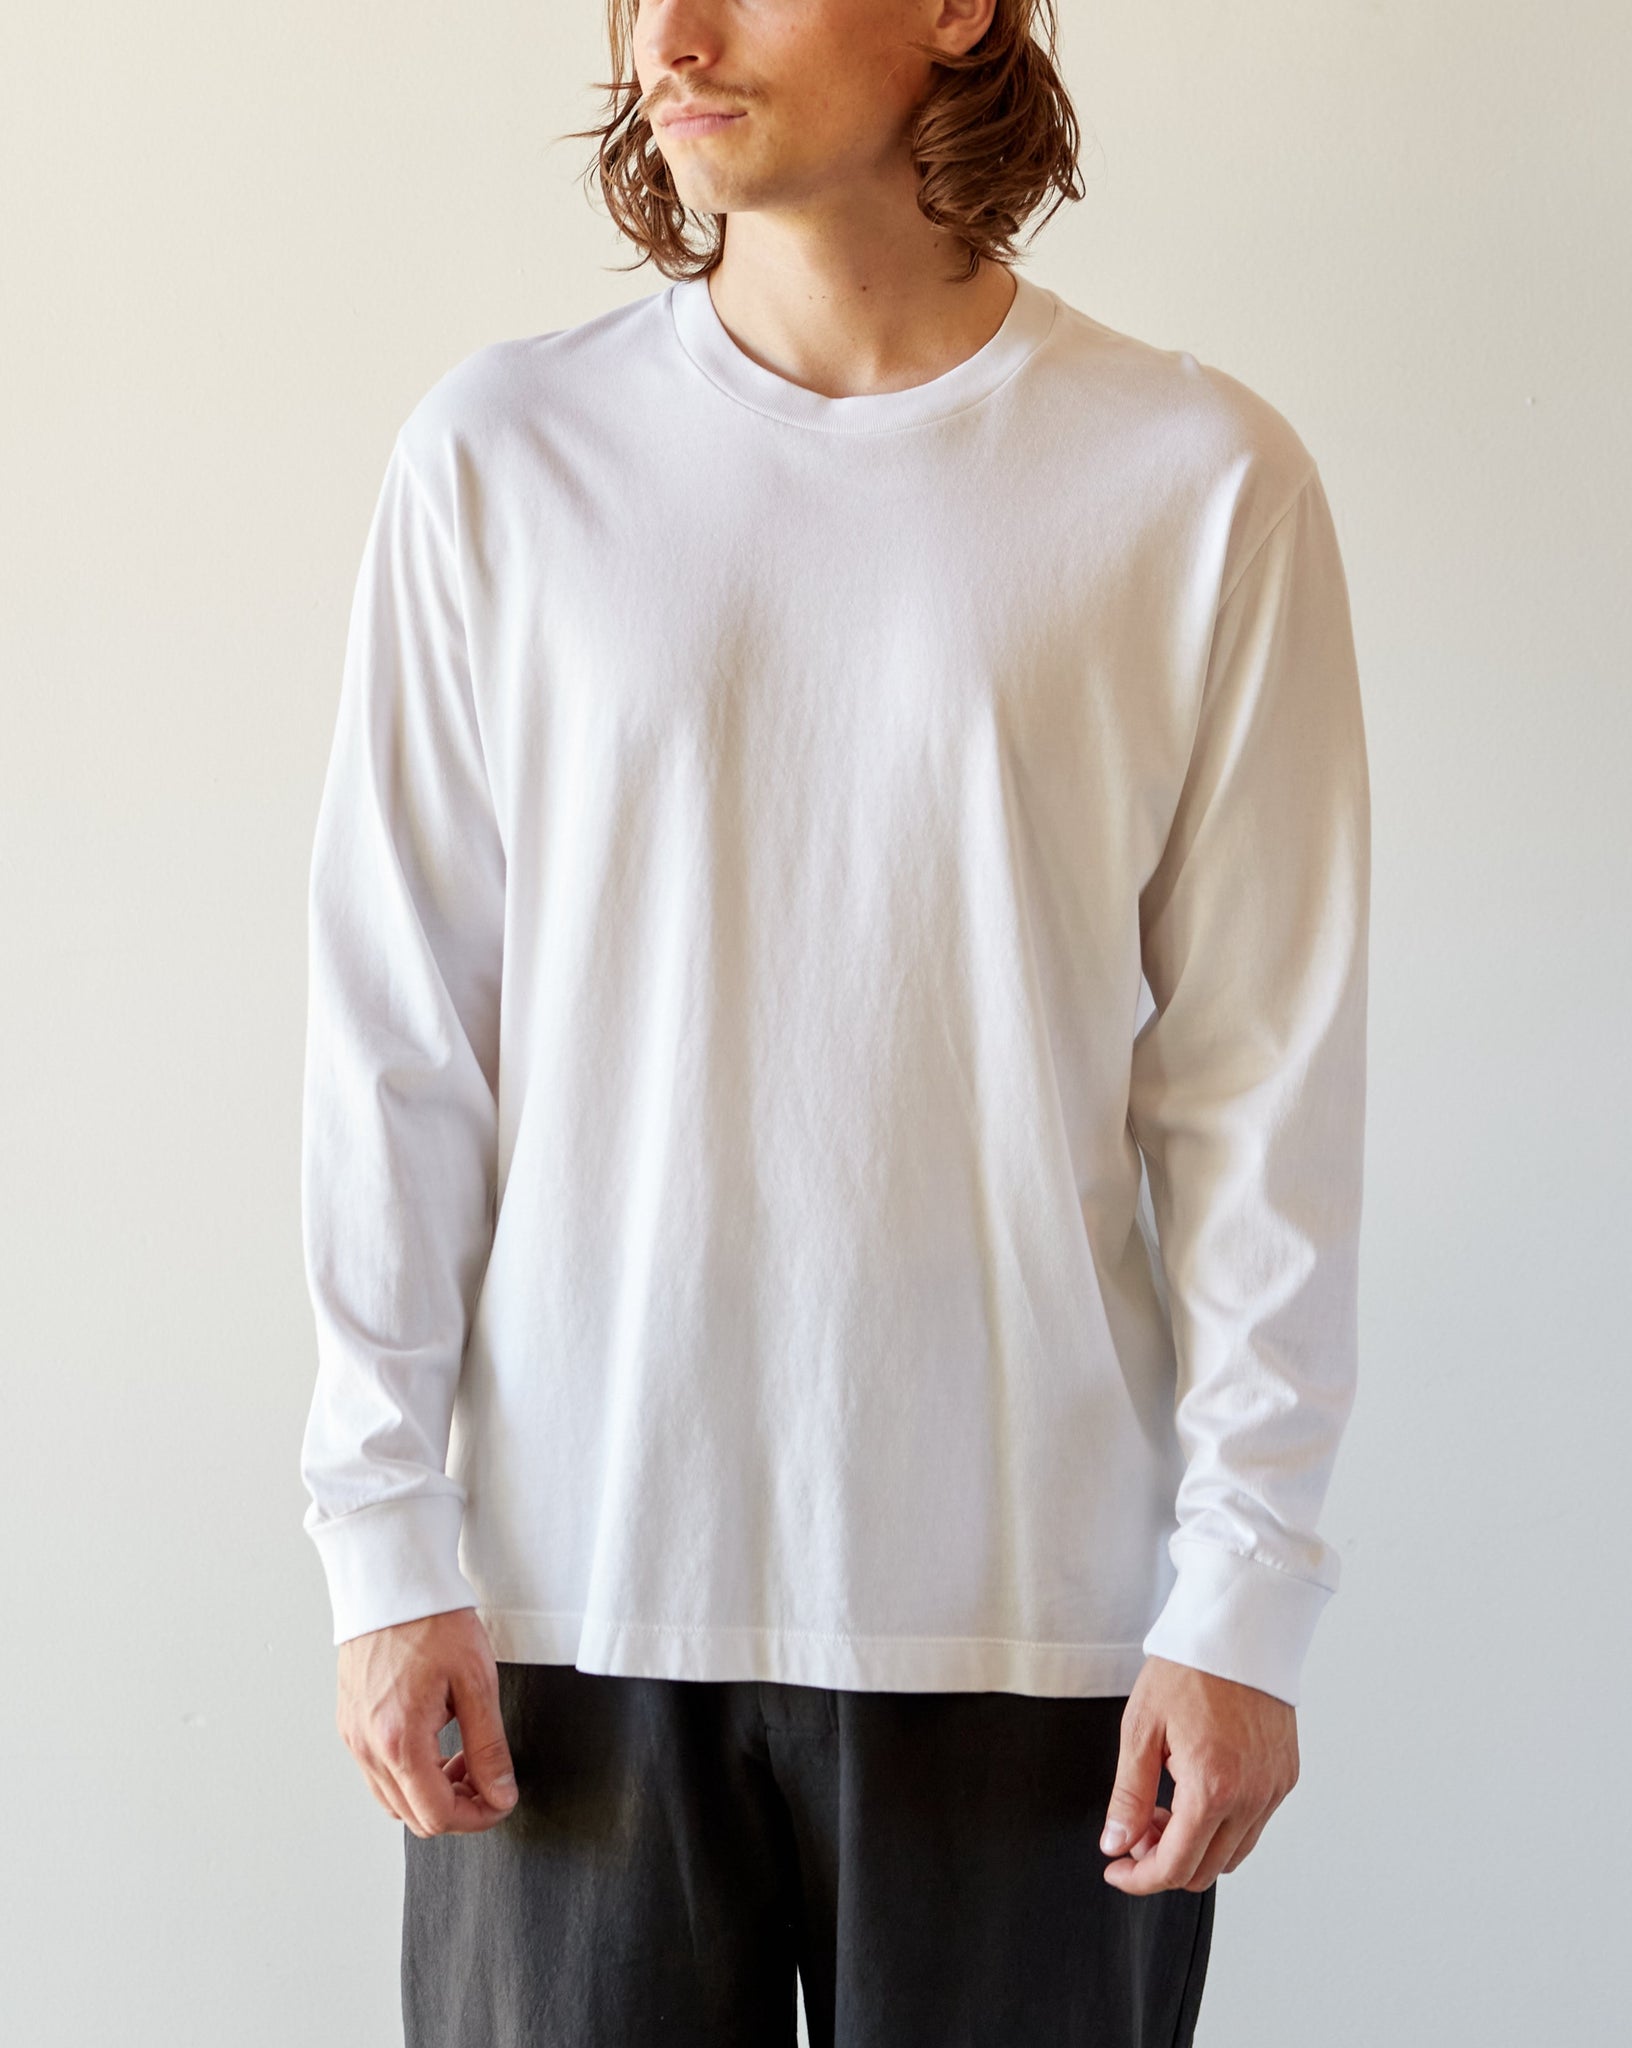 Boxy | Glasswing Lady White L/S T-Shirt, White